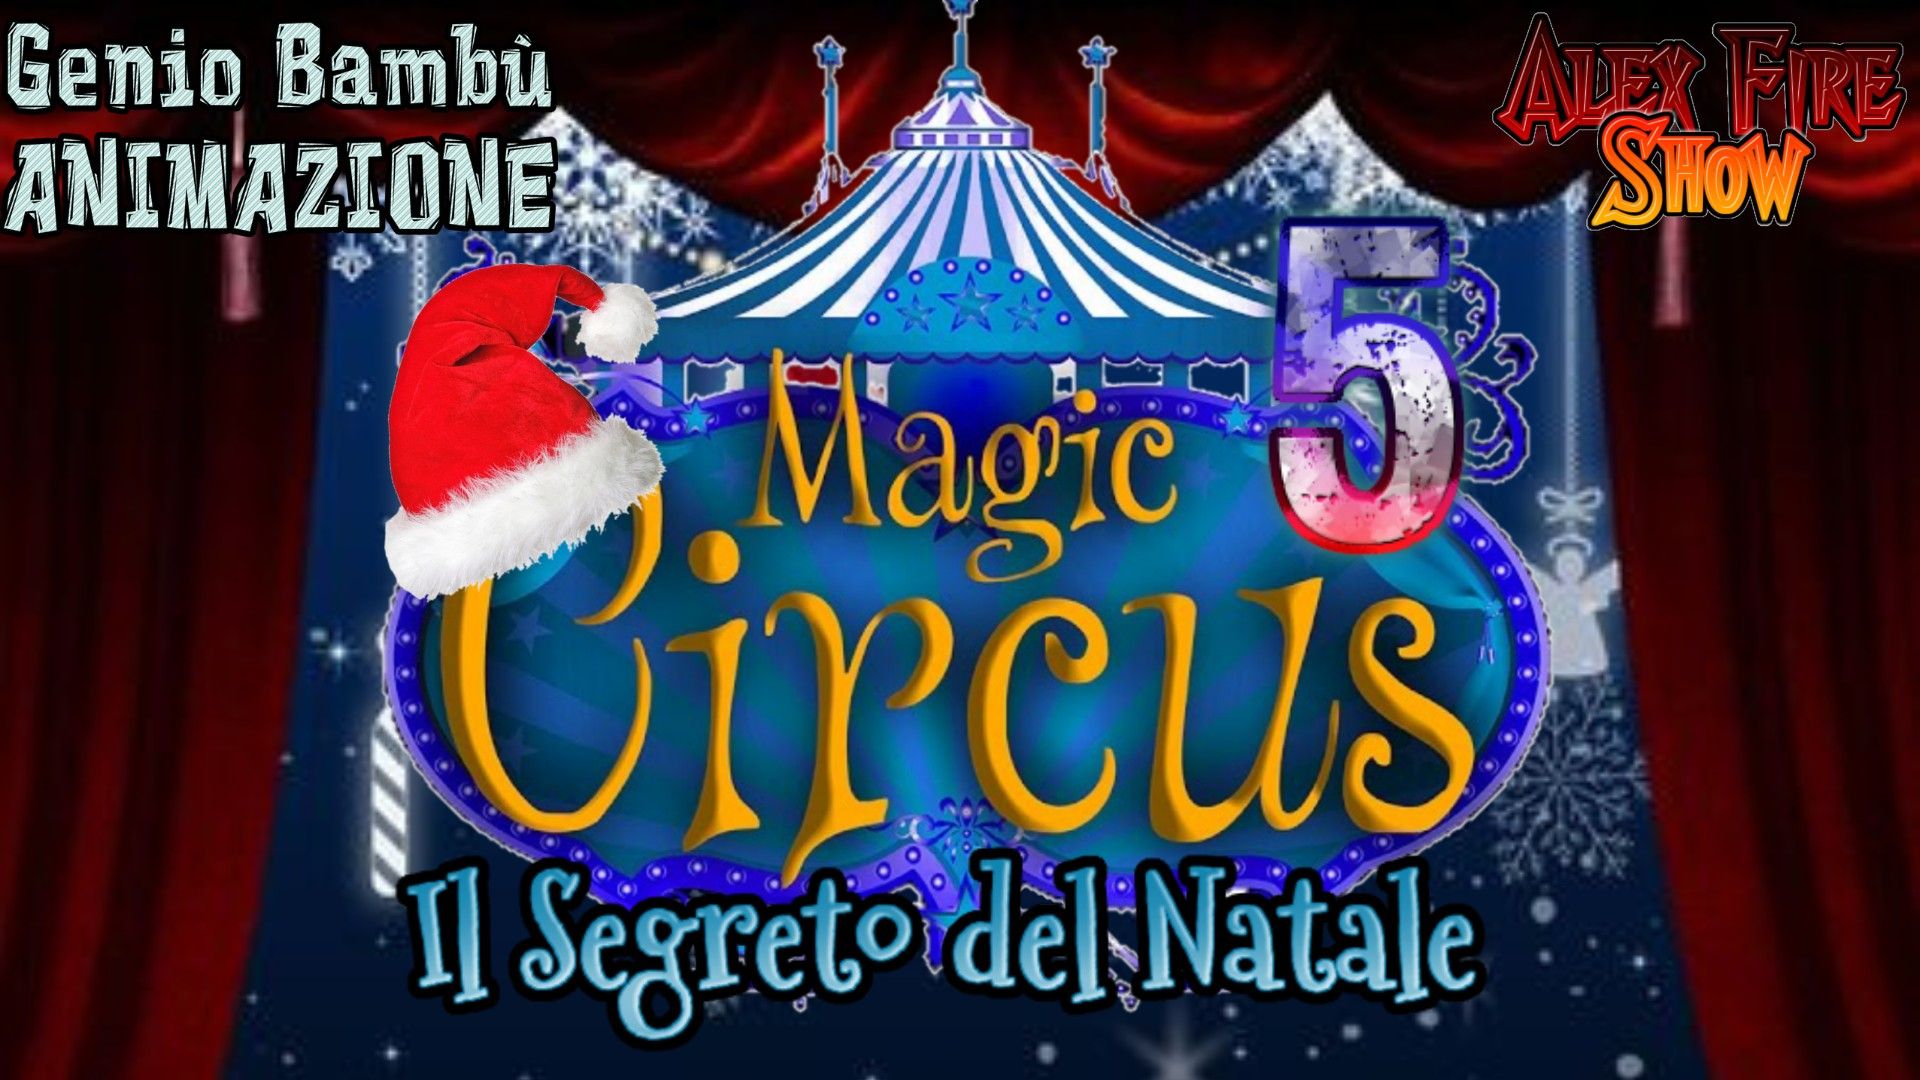 Magic Circus 5 - IL SEGRETO DEL NATALE